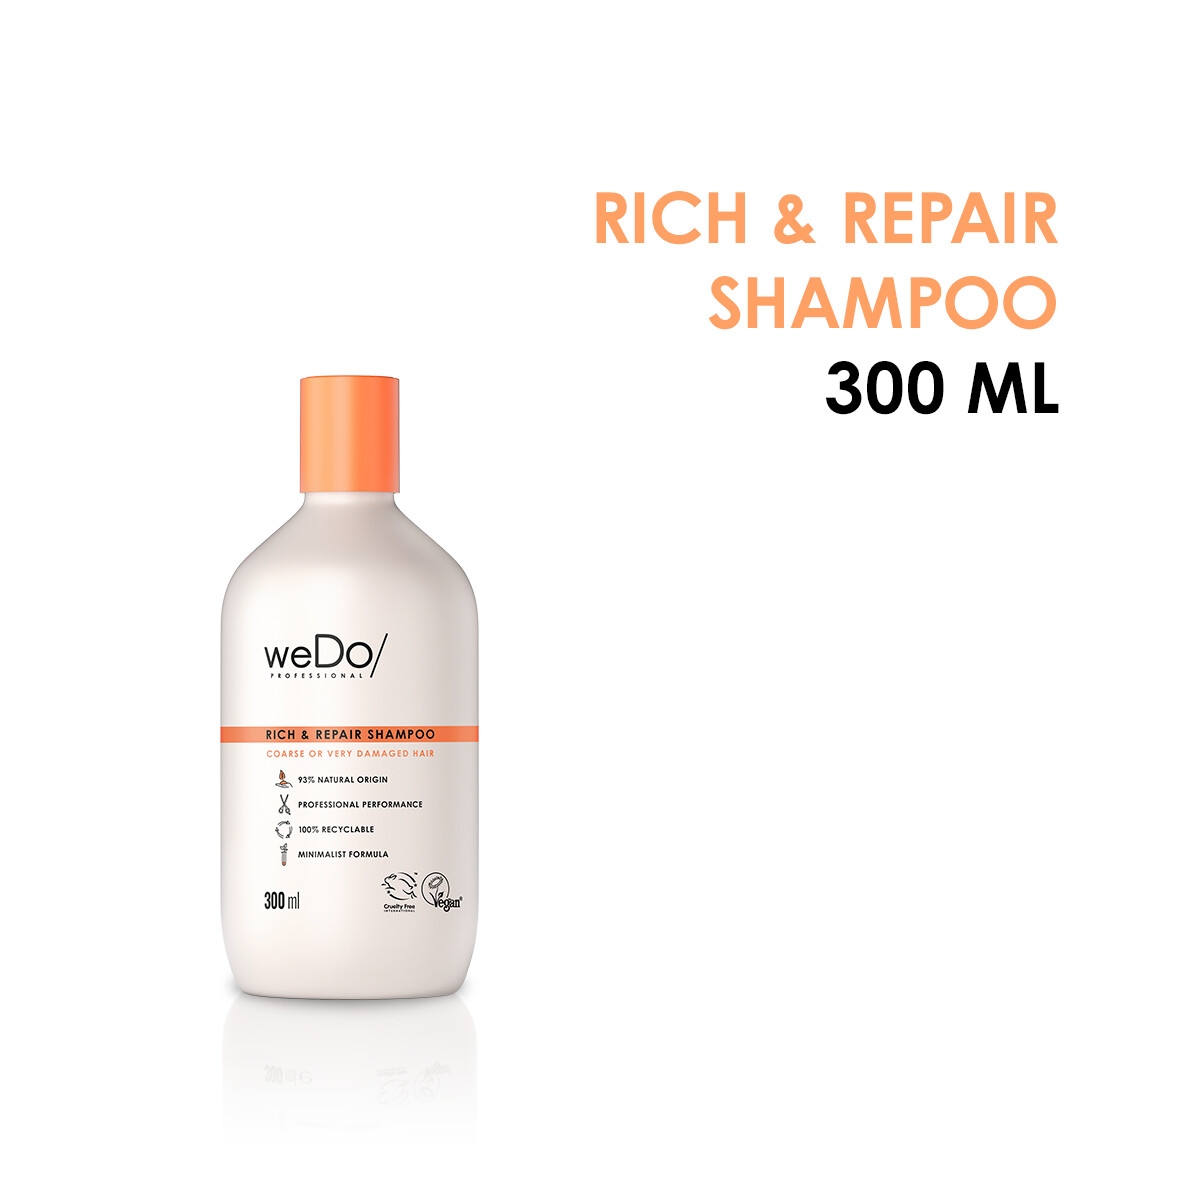 Shampoo Rich & Repair weDo/ 300ml 300ml